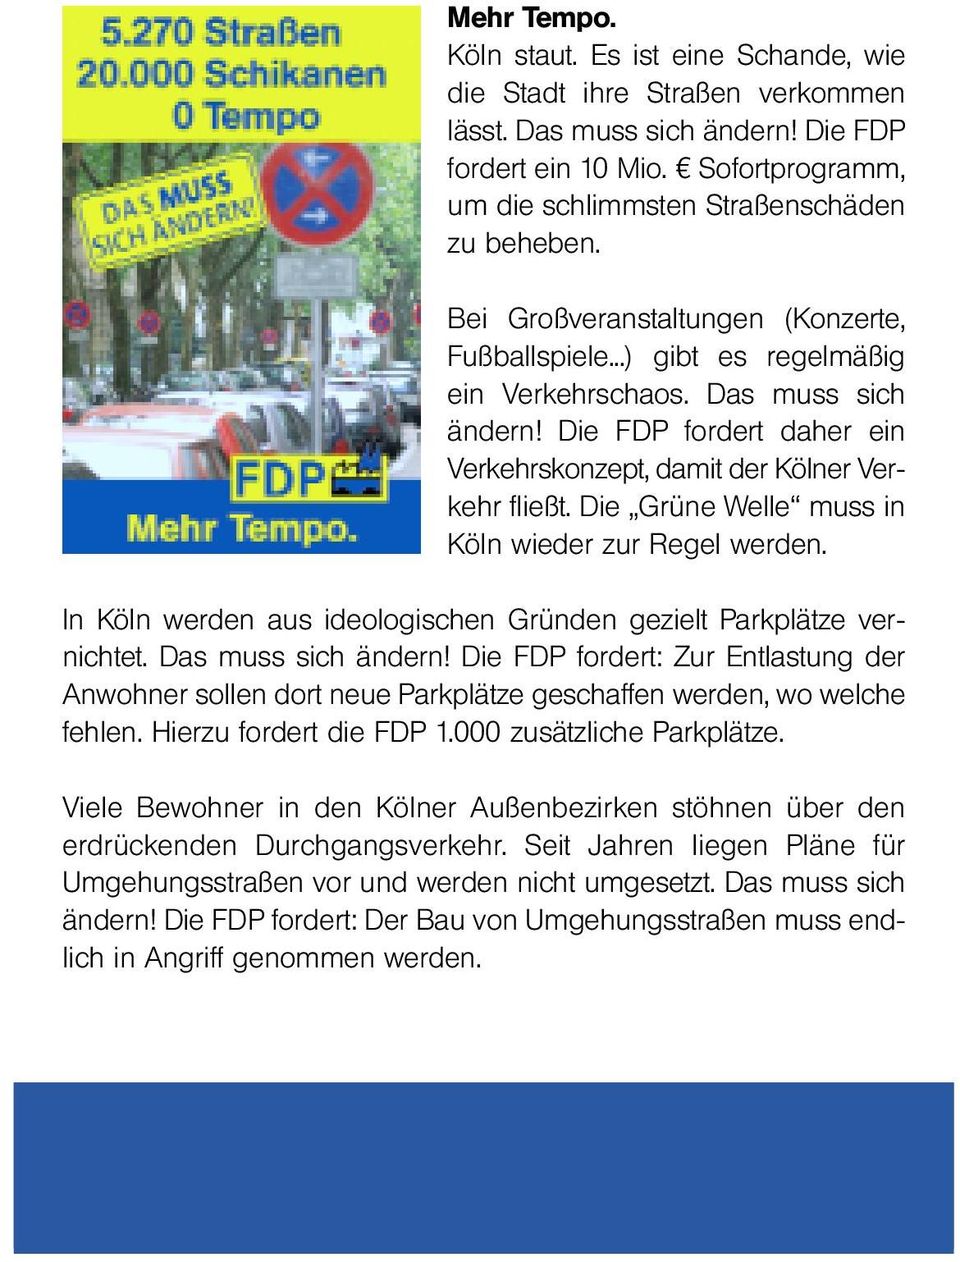 Die FDP fordert daher ein Verkehrskonzept, damit der Kölner Verkehr fließt. Die Grüne Welle muss in Köln wieder zur Regel werden.